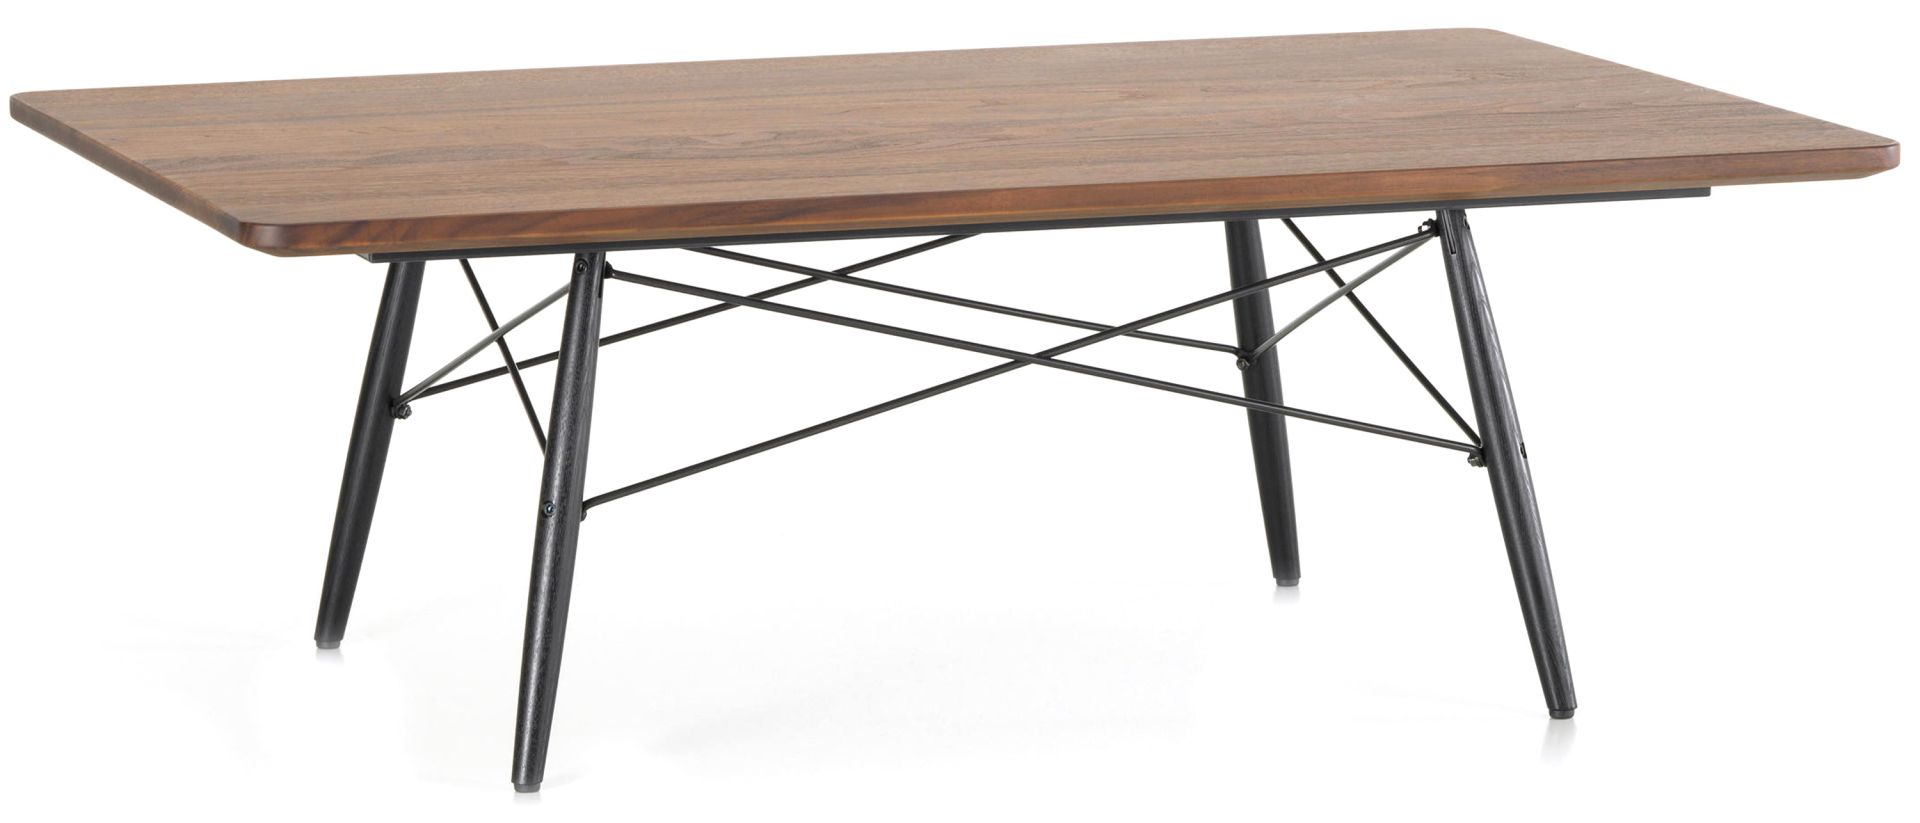 Vitra designové konferenční stoly Eames Coffee Table (114 x 76 cm) - DESIGNPROPAGANDA